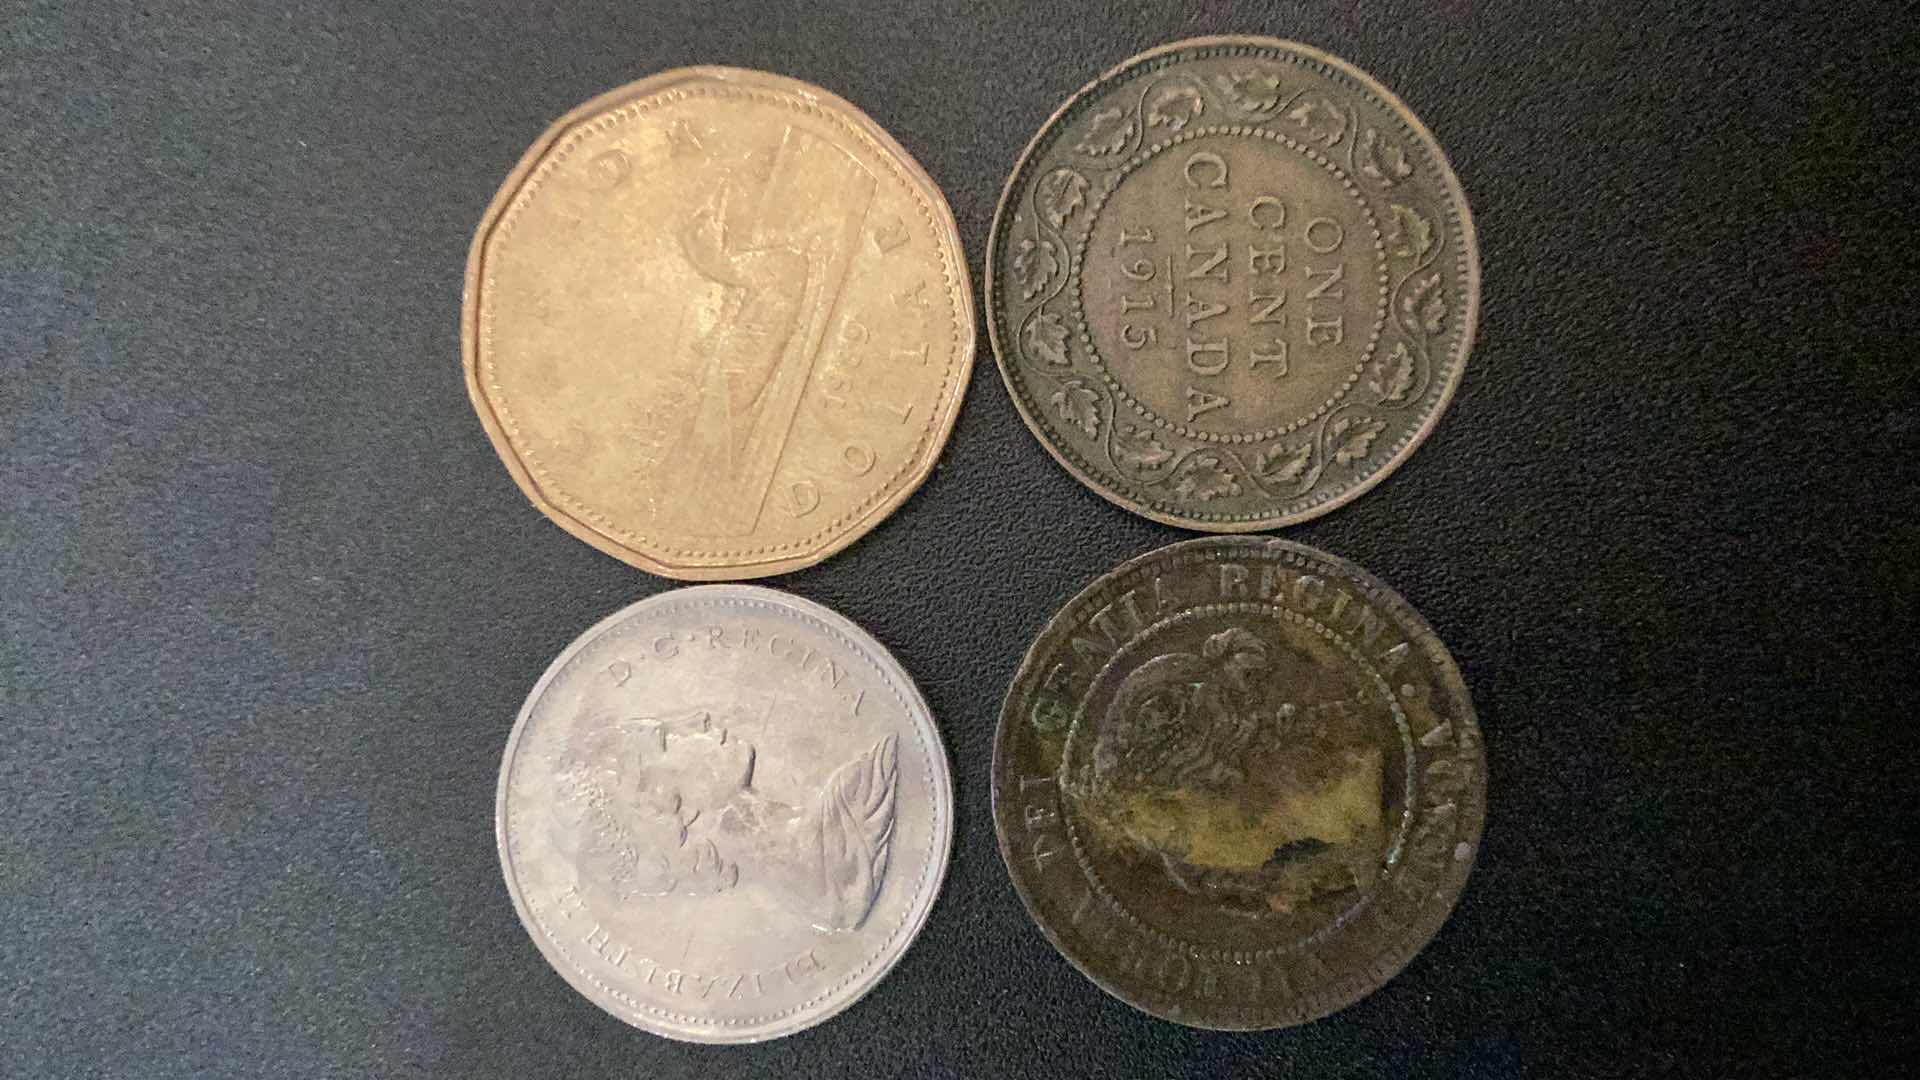 Photo 2 of 4 COLLECTIBLE COINS - CANADA, 1901, 1915, 1975, 1989